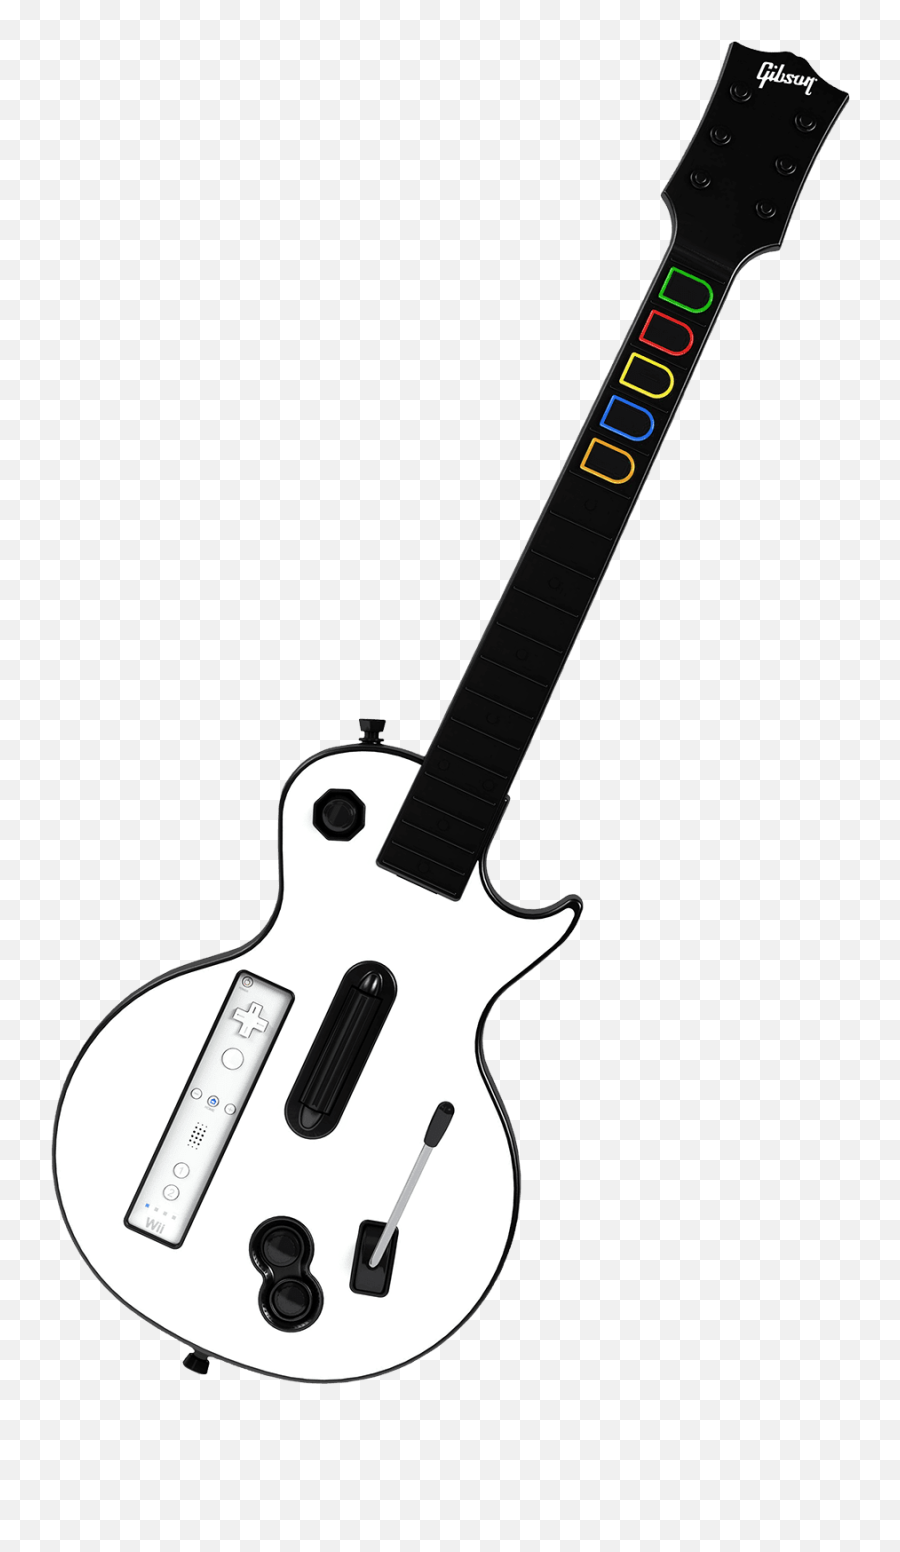 Nintendo Wii Guitar Hero Iii - Guitar Hero Wii Guitar Wii Guitar Hero Guitar Emoji,Guitar Transparent